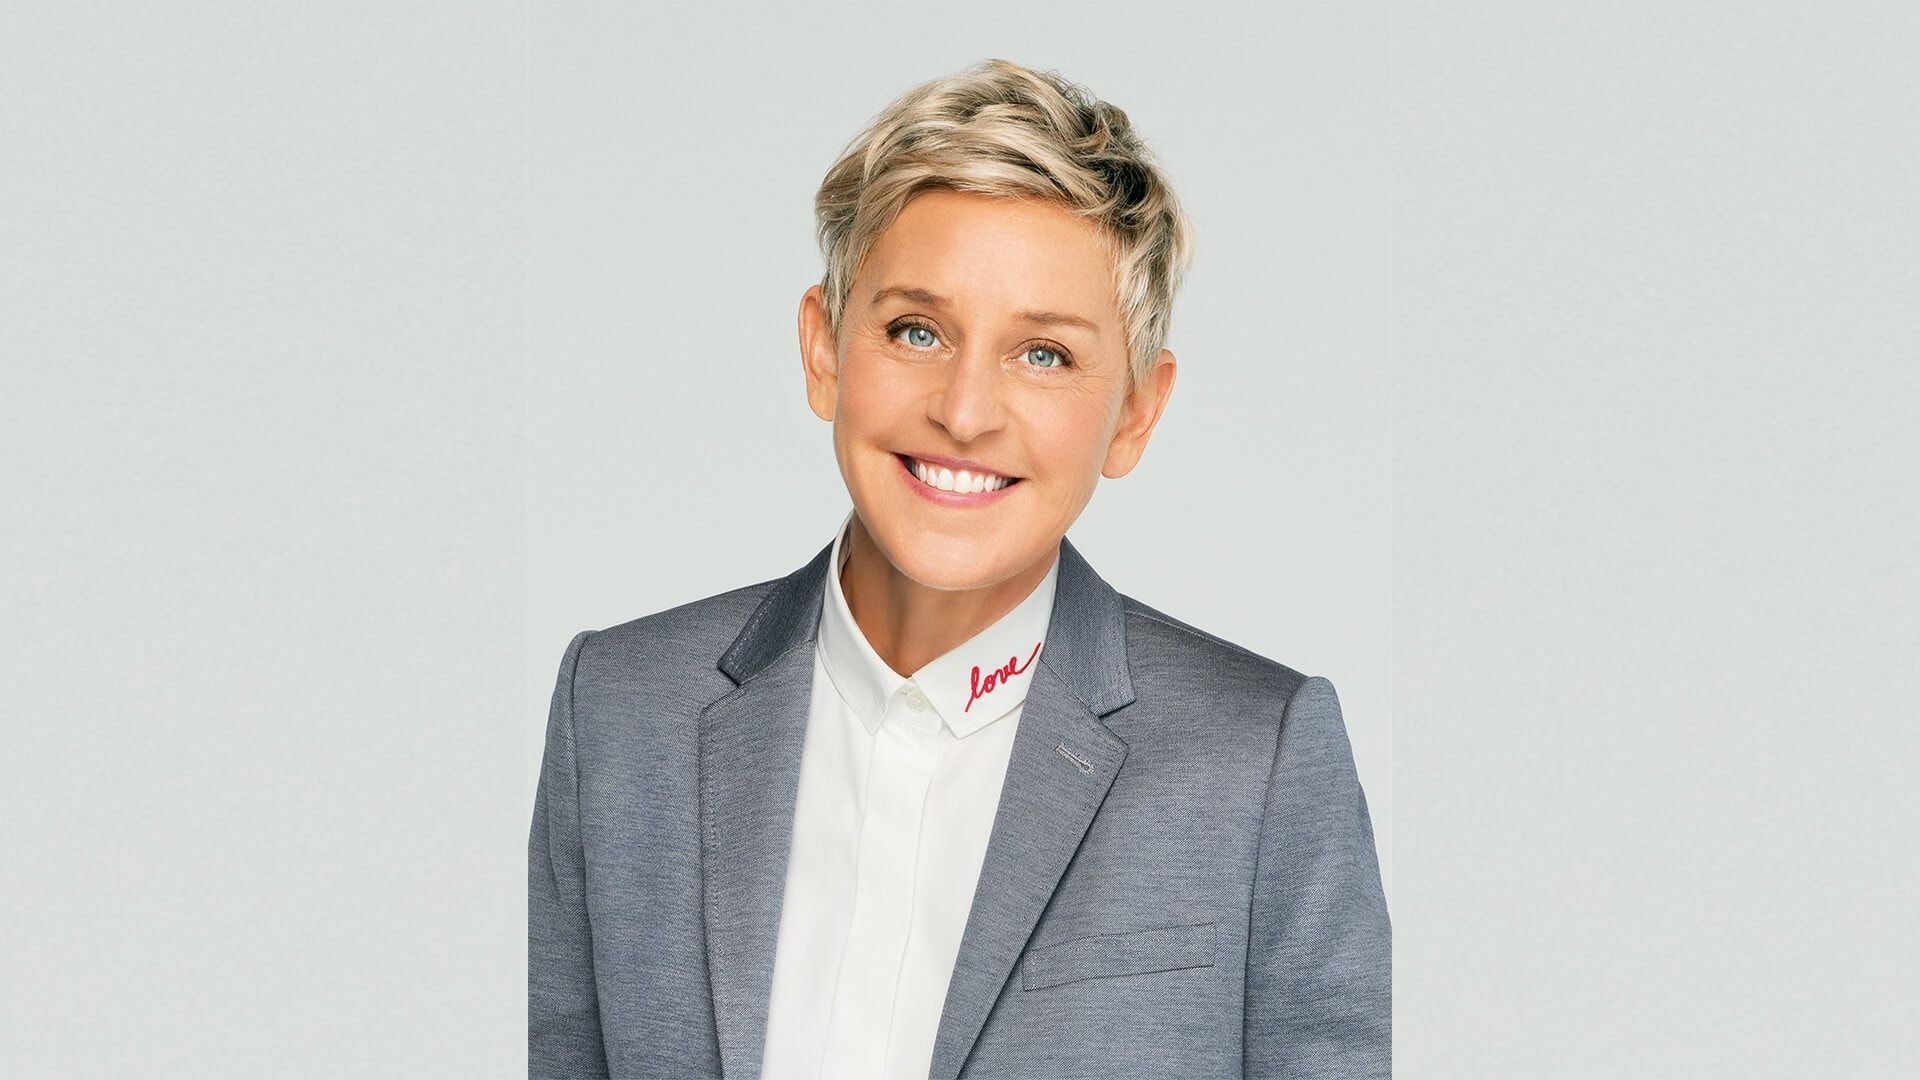 Ellen DeGeneres, Portia de Rossi, Talk show ending, 1920x1080 Full HD Desktop